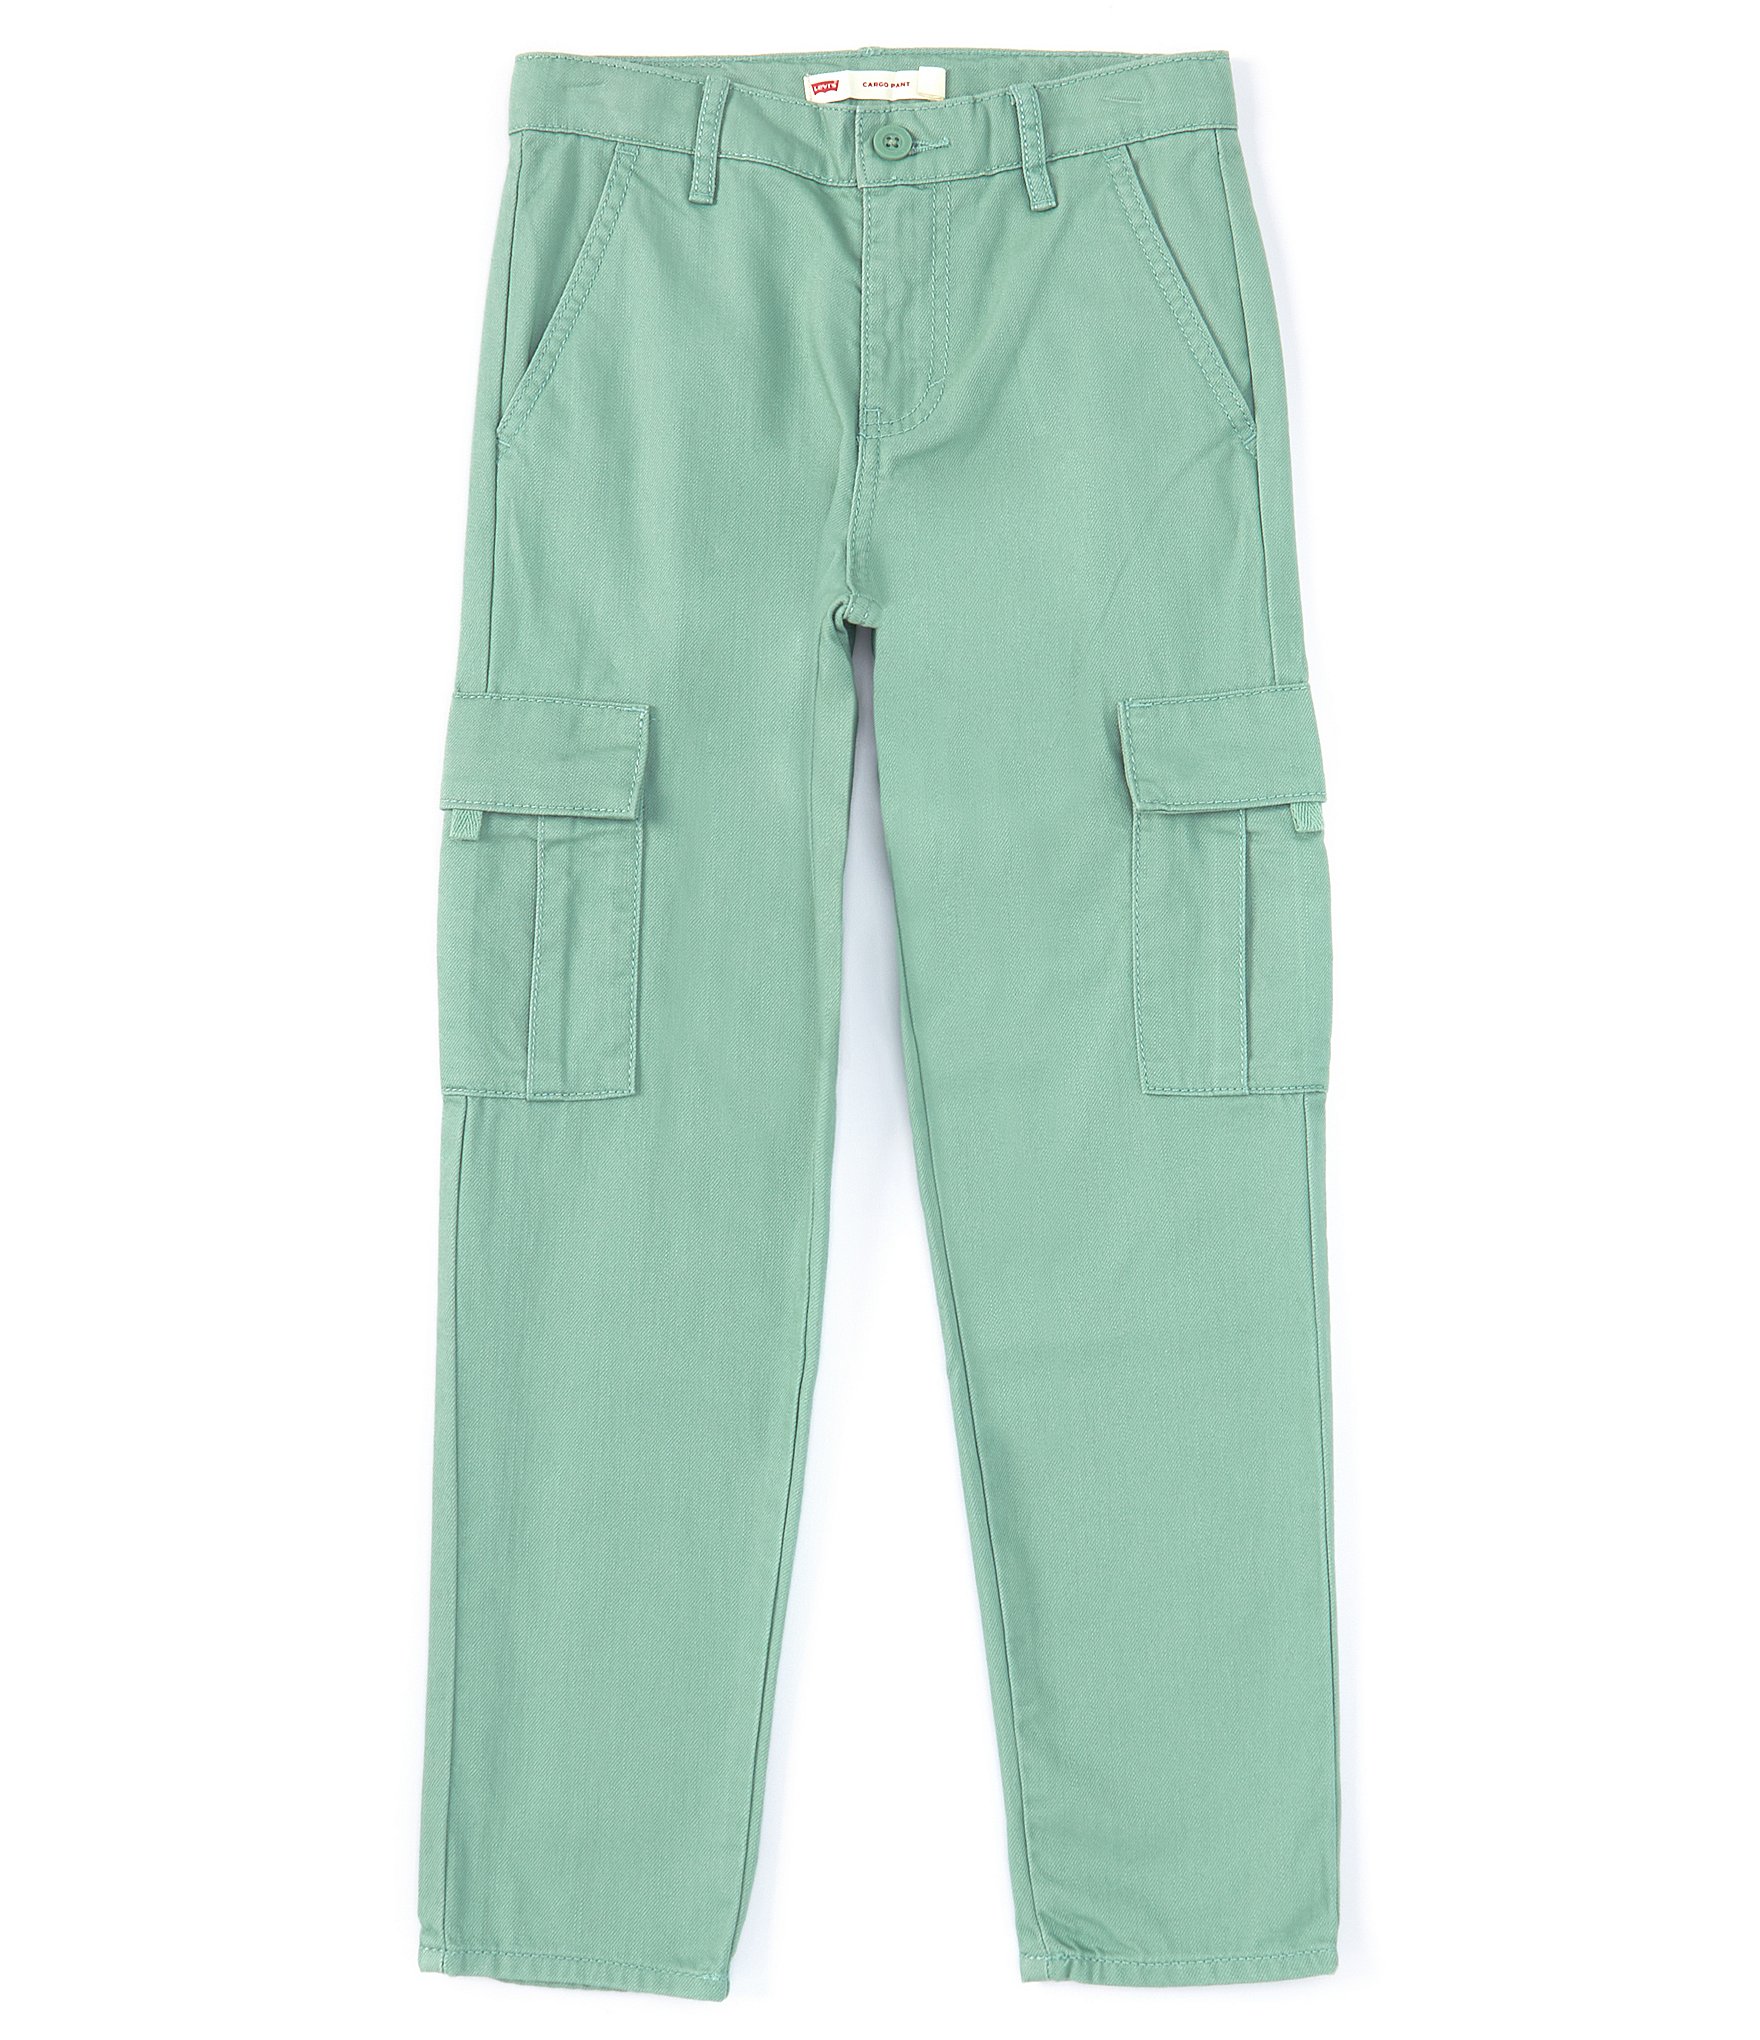 H&m Cargo Pants - Shop on Pinterest